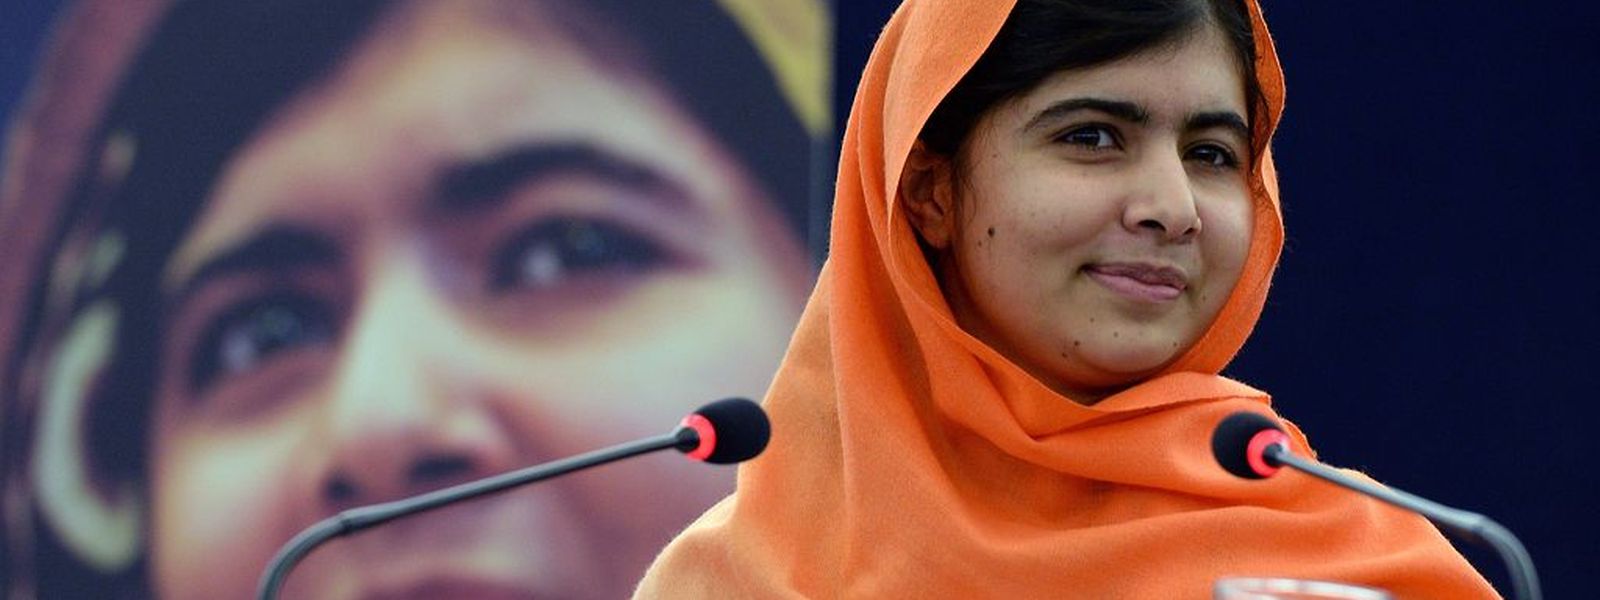 Eine Aufnahme aus dem Jahr 2013 mit dem pakistanischen Teenager Malala Yousafzai.